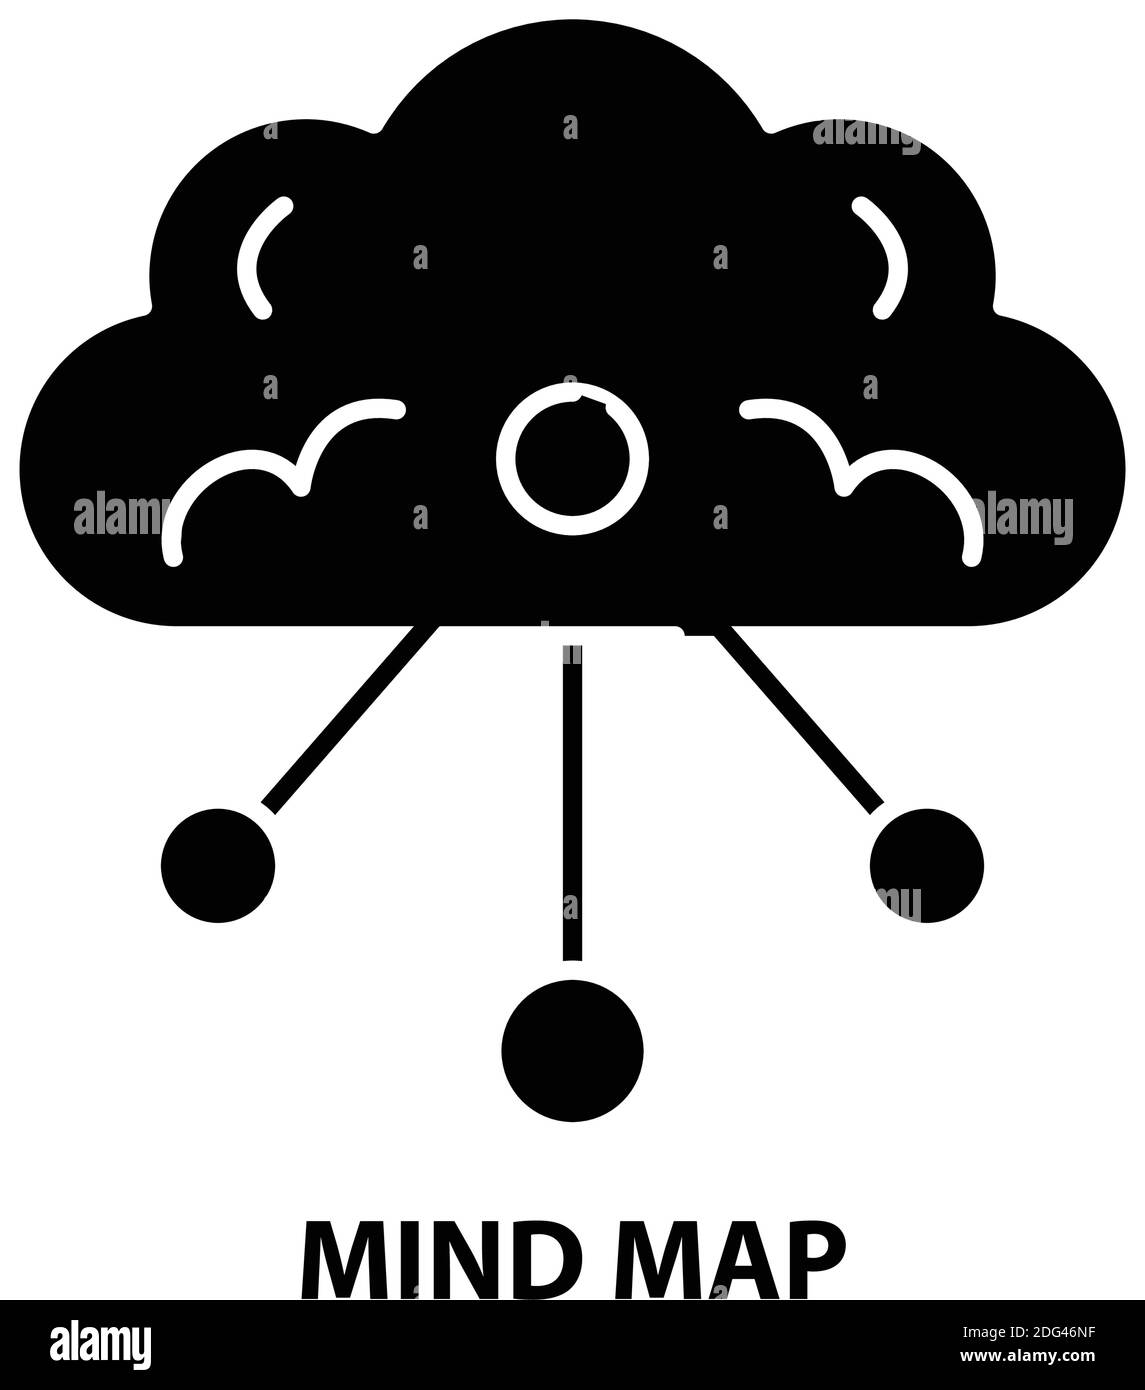 icona della mappa mentale, segno vettoriale nero con tratti modificabili, illustrazione del concetto Illustrazione Vettoriale